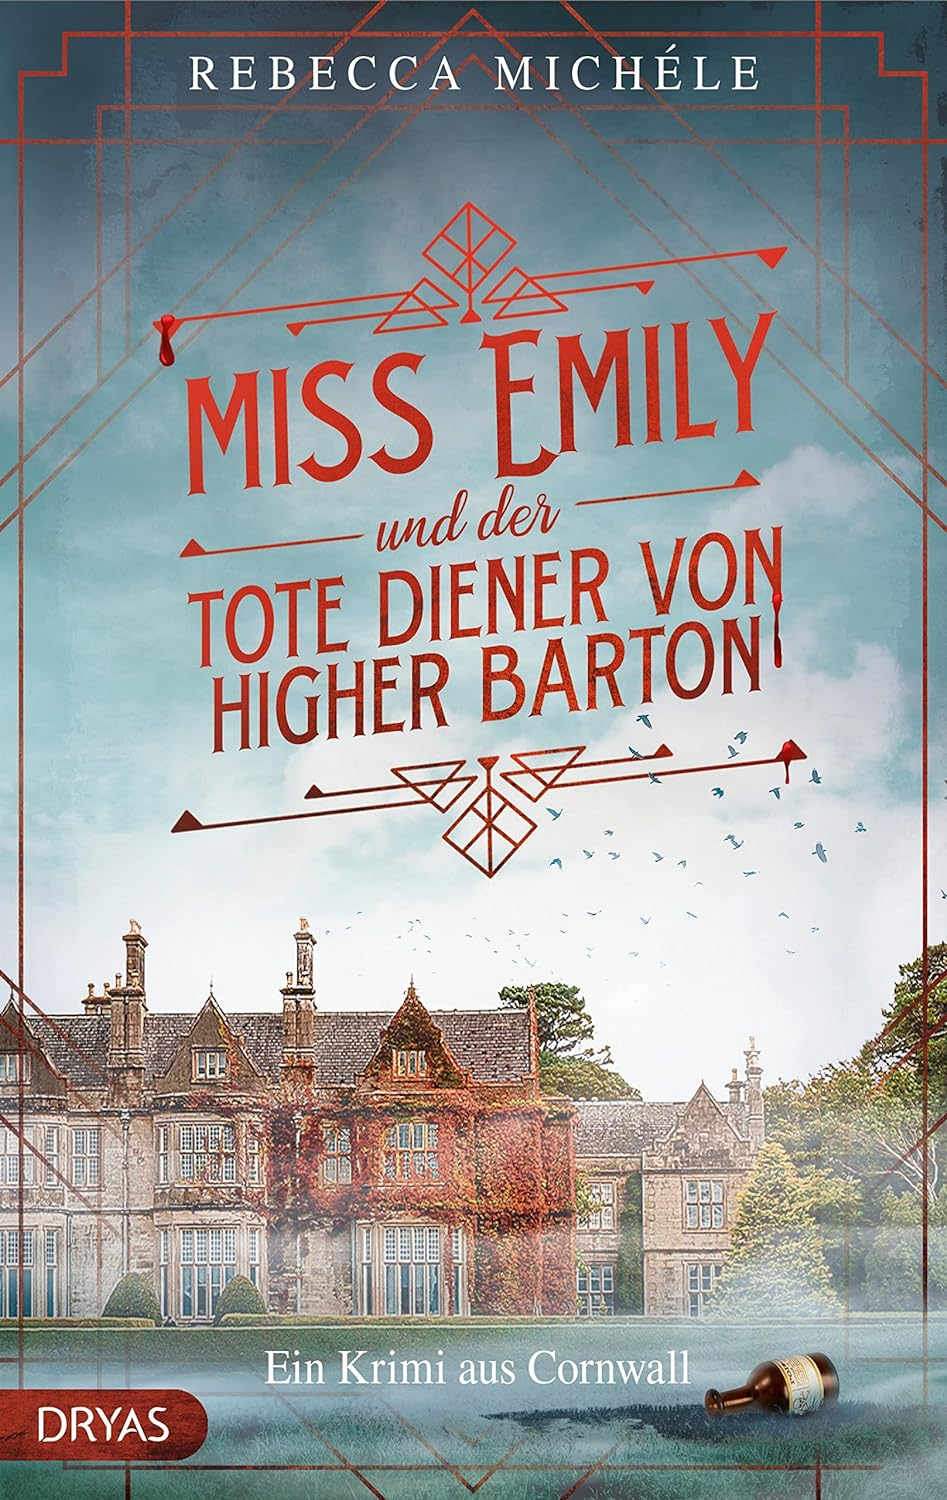 Gratis Kindle-Ausgabe: “Miss Emily und der tote Diener von Higher Barton: Ein Cornwall-Krimi”